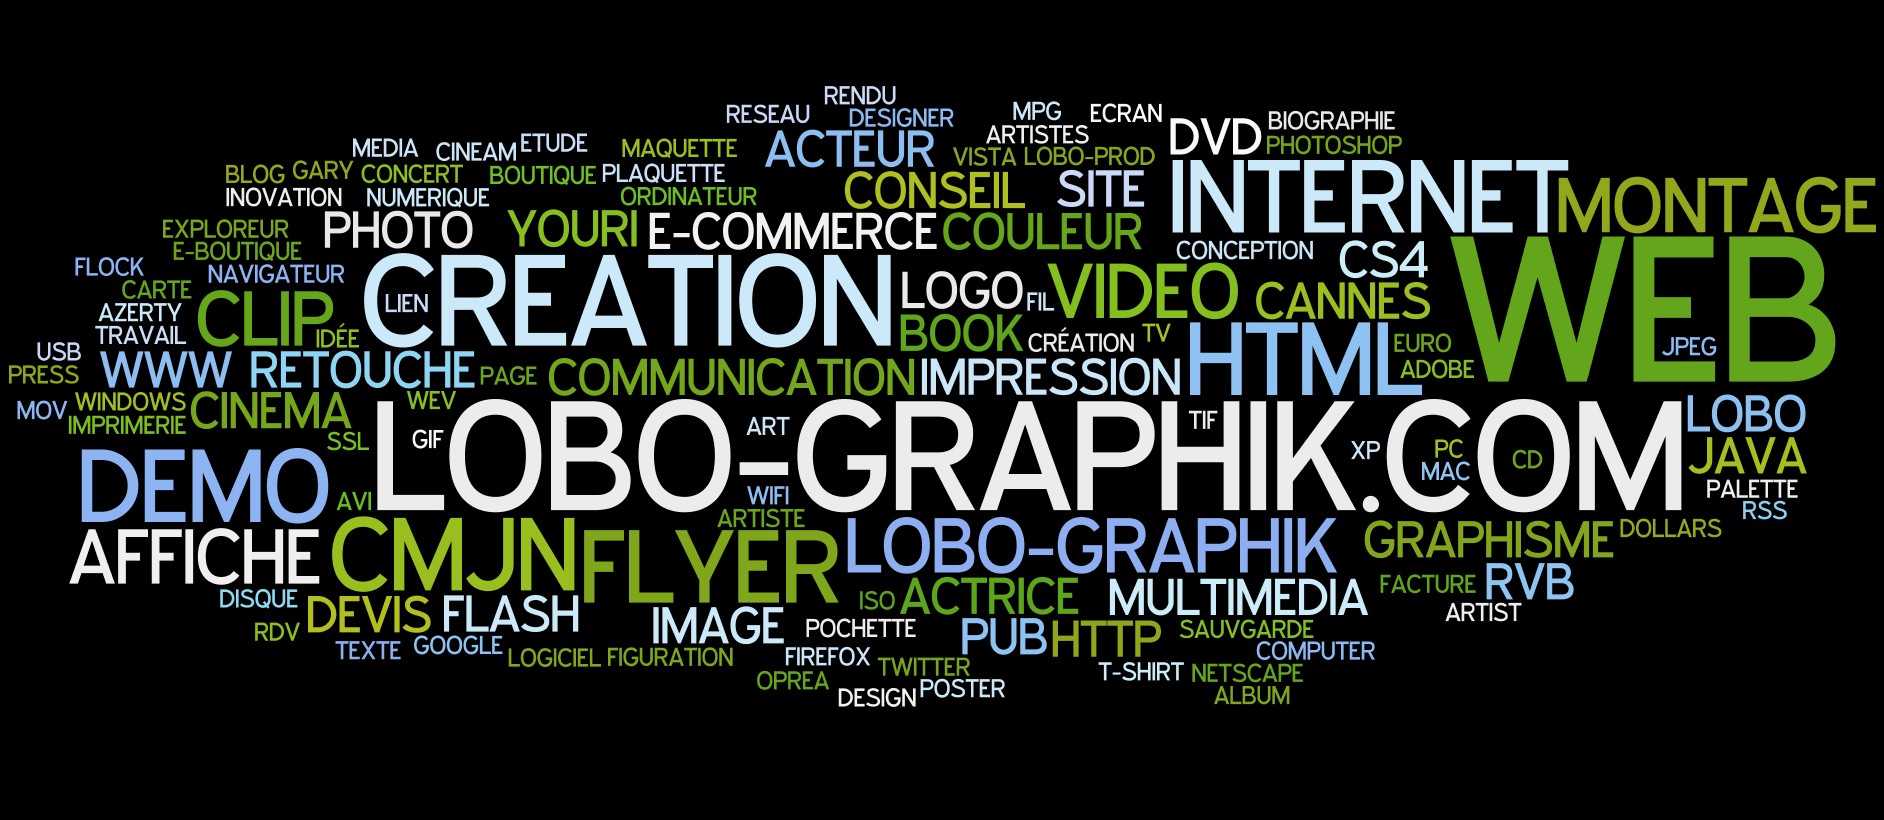 LoBO-GraphiK - Création Graphique